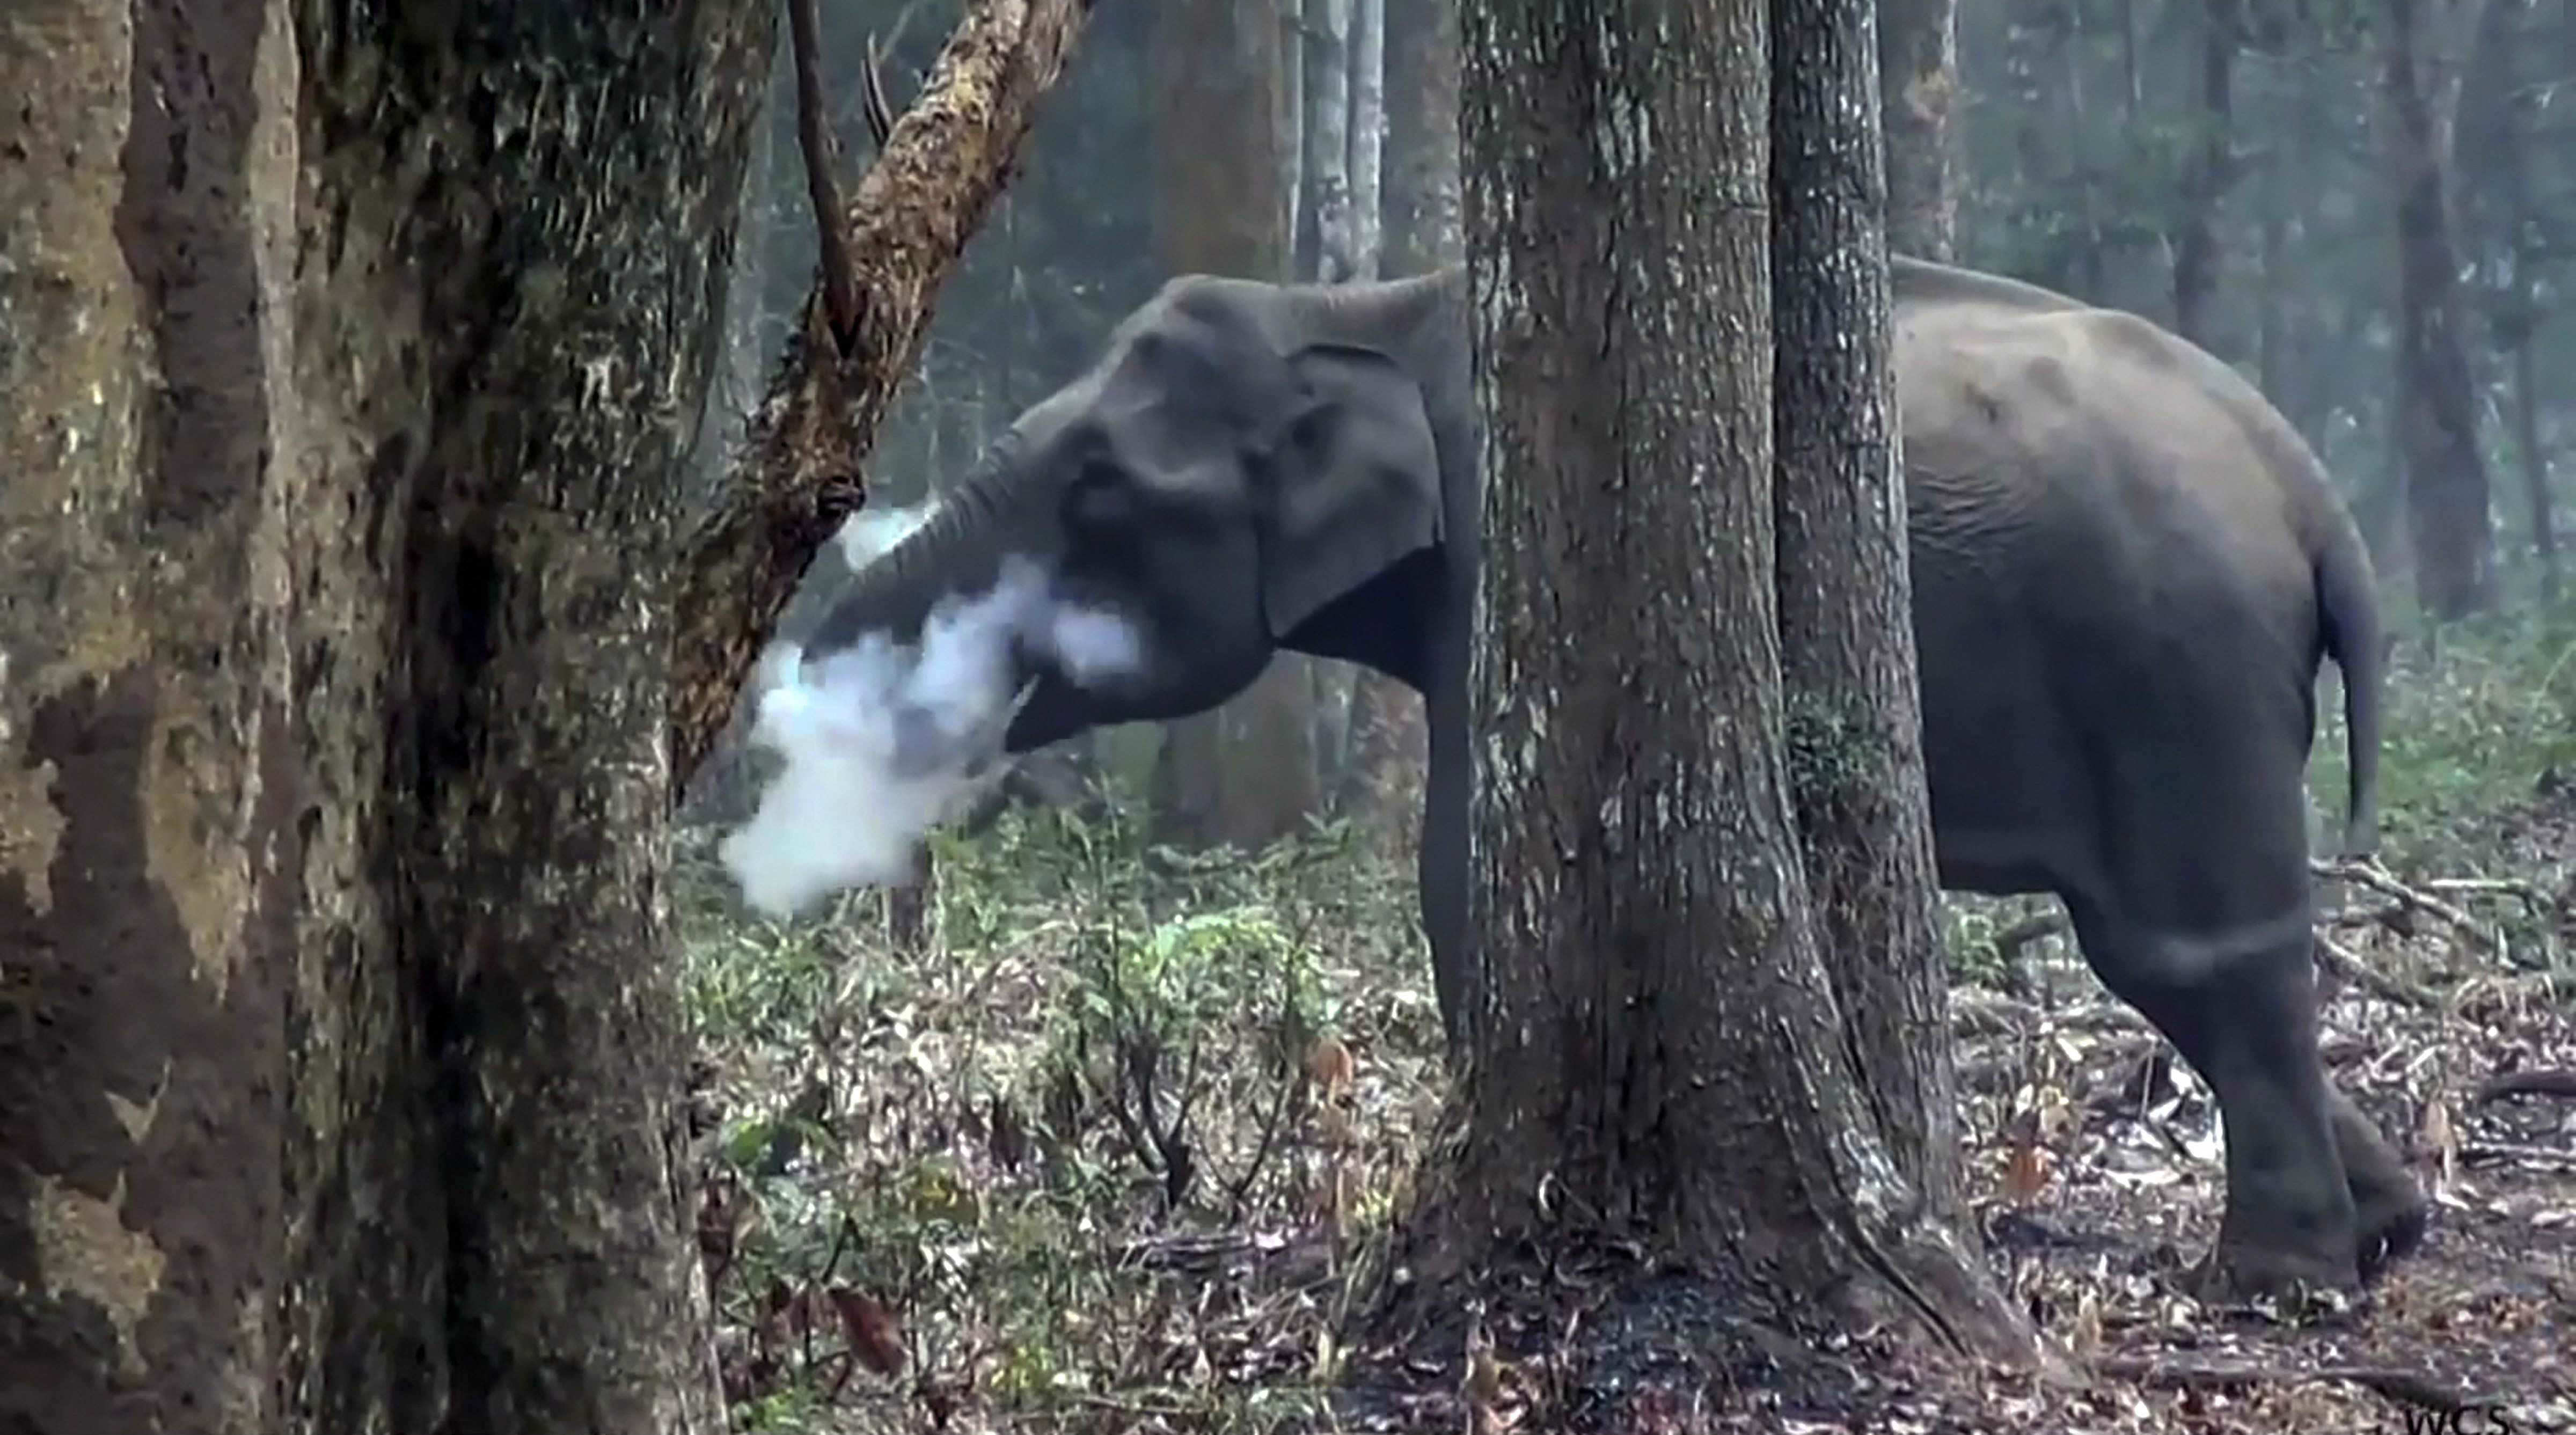 धूम्रपान करता जंगली हाथी, वैज्ञानिकों-विशेषज्ञों में कौतूहल 